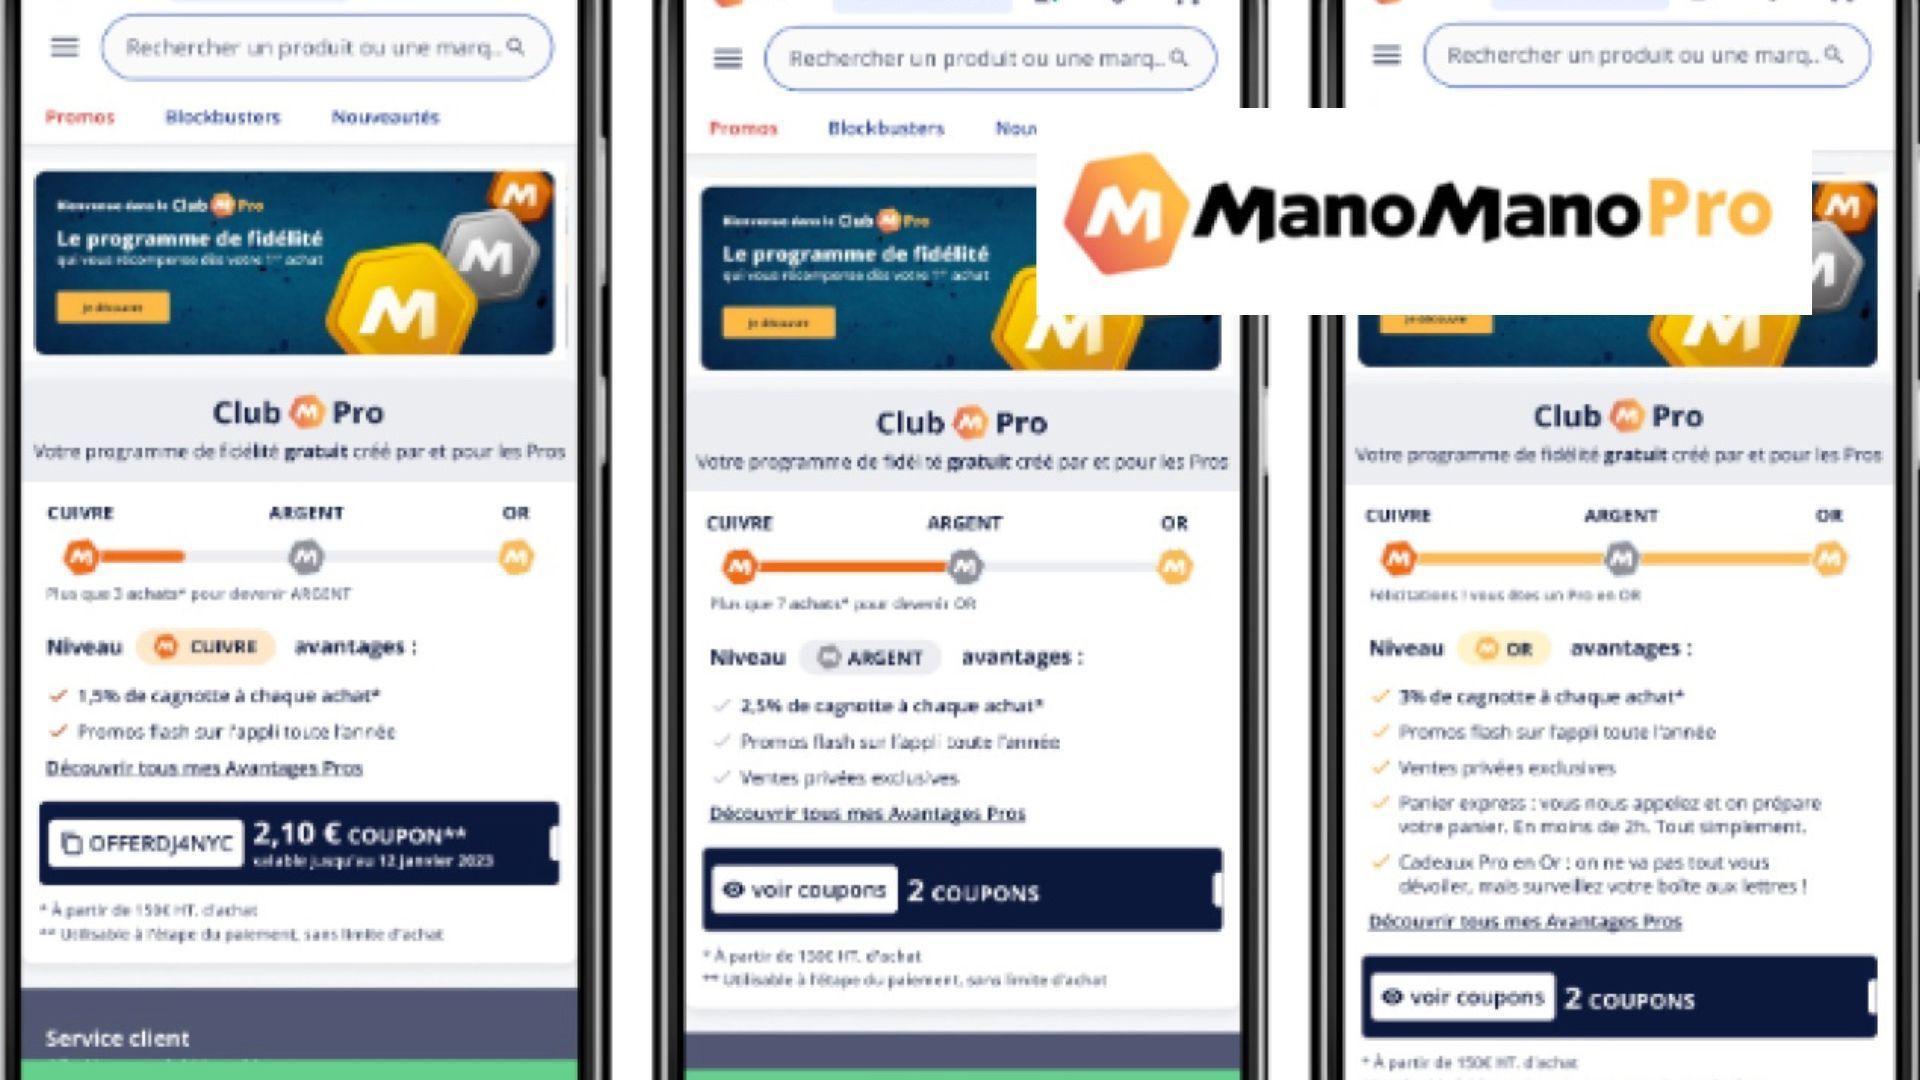 ManoManoPro lance le Club ManoManoPro, un nouveau programme de fidélité gratuit créé par et pour les pros